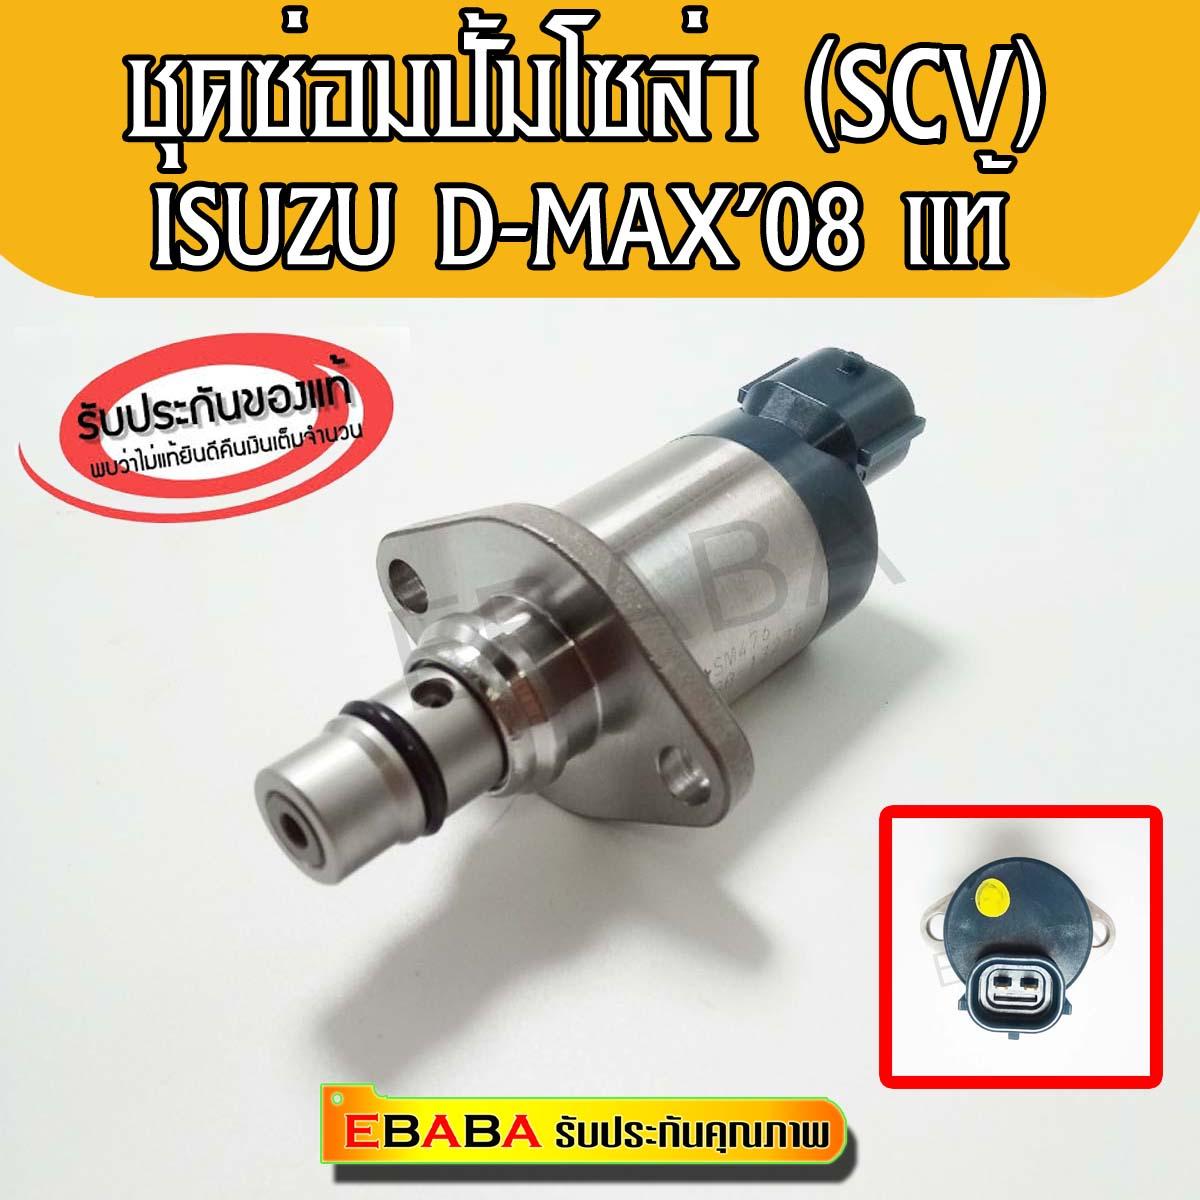 ชุดซ่อมปั้มโซล่า ISUZU D-MAX ปี2008-ALL NEW (8-98145455-1) (SCV Vale) แท้